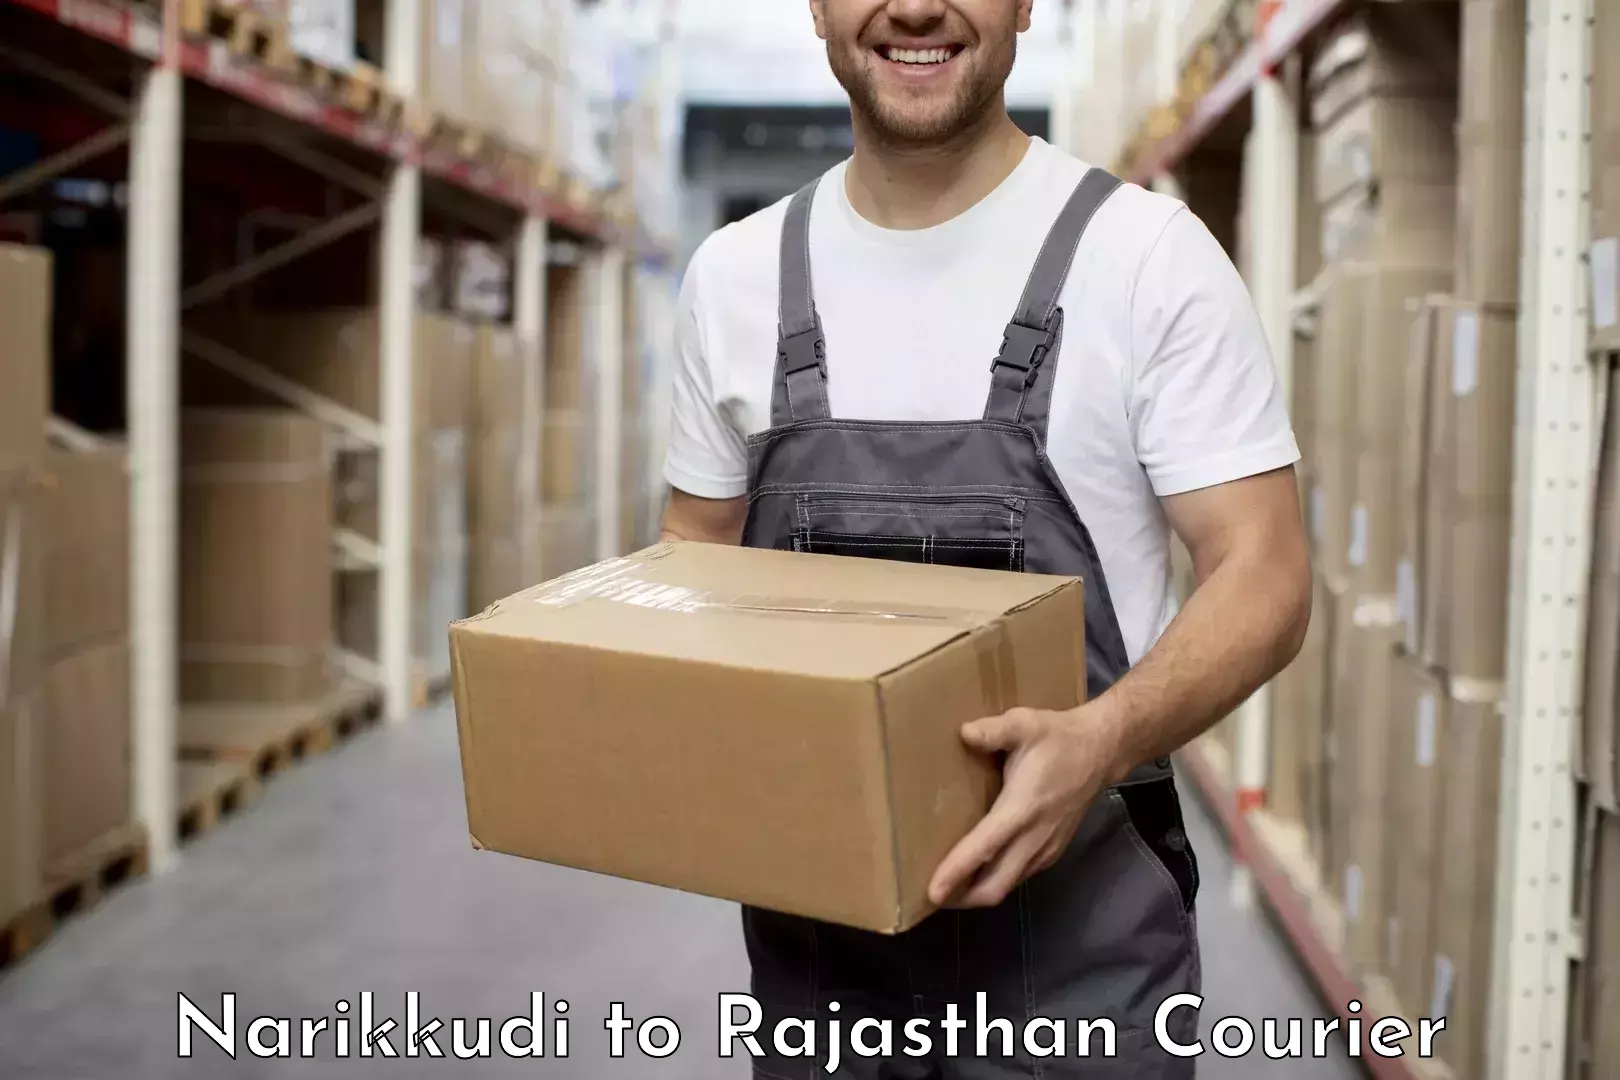 Urban courier service Narikkudi to Rajasthan